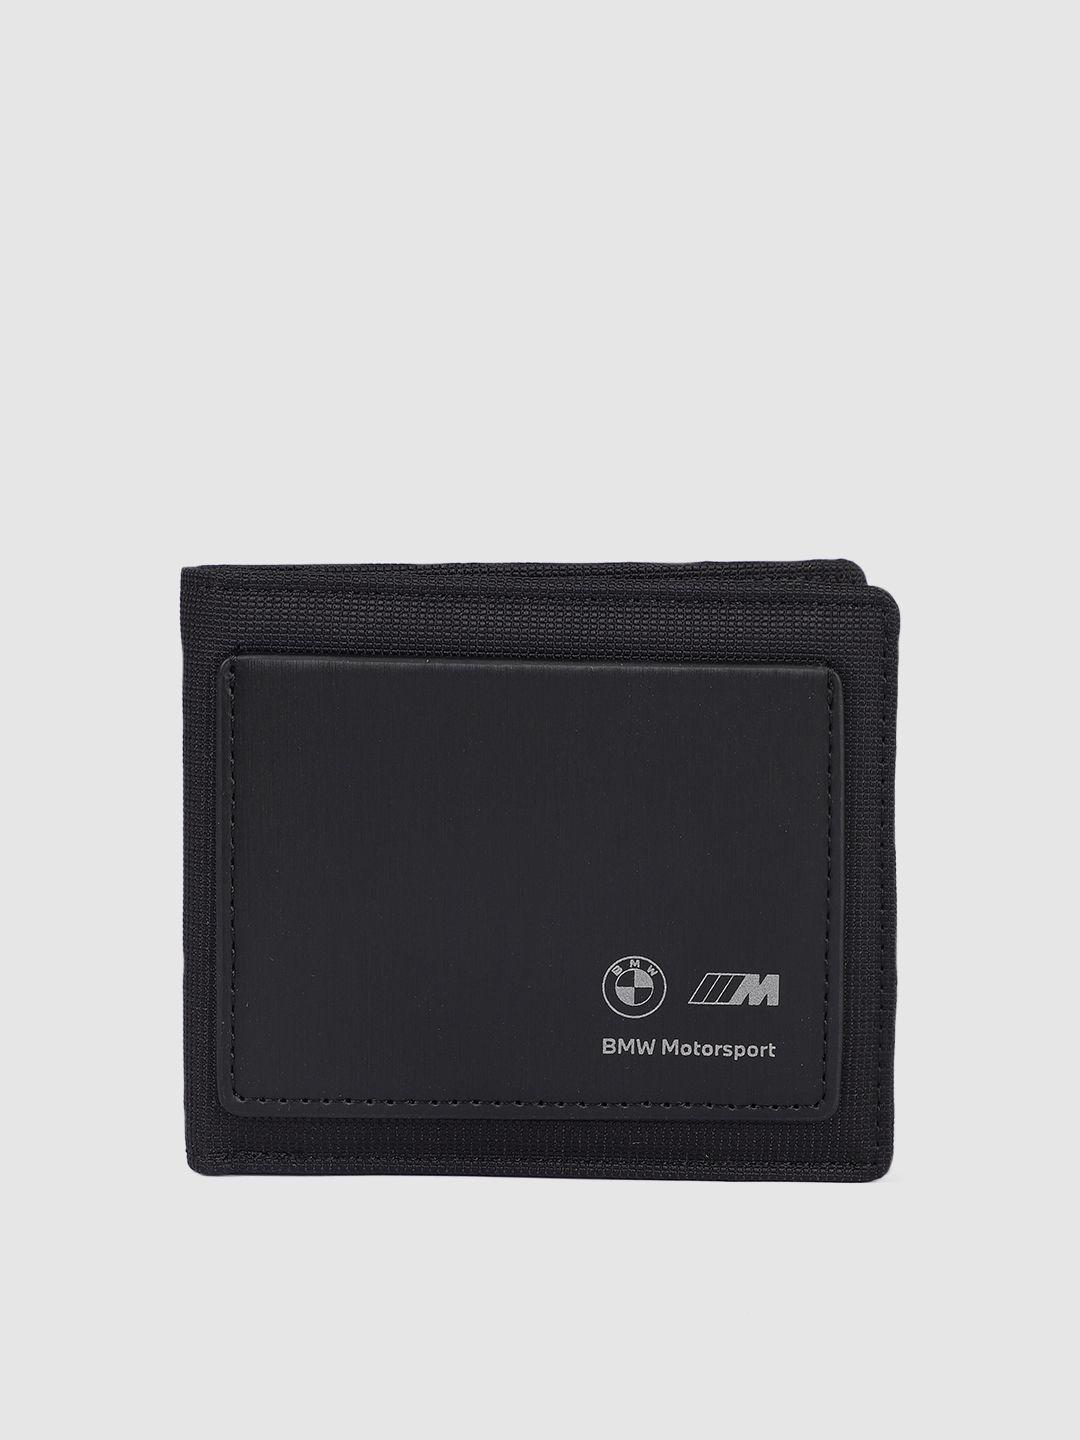 puma motorsport unisex black two fold wallet